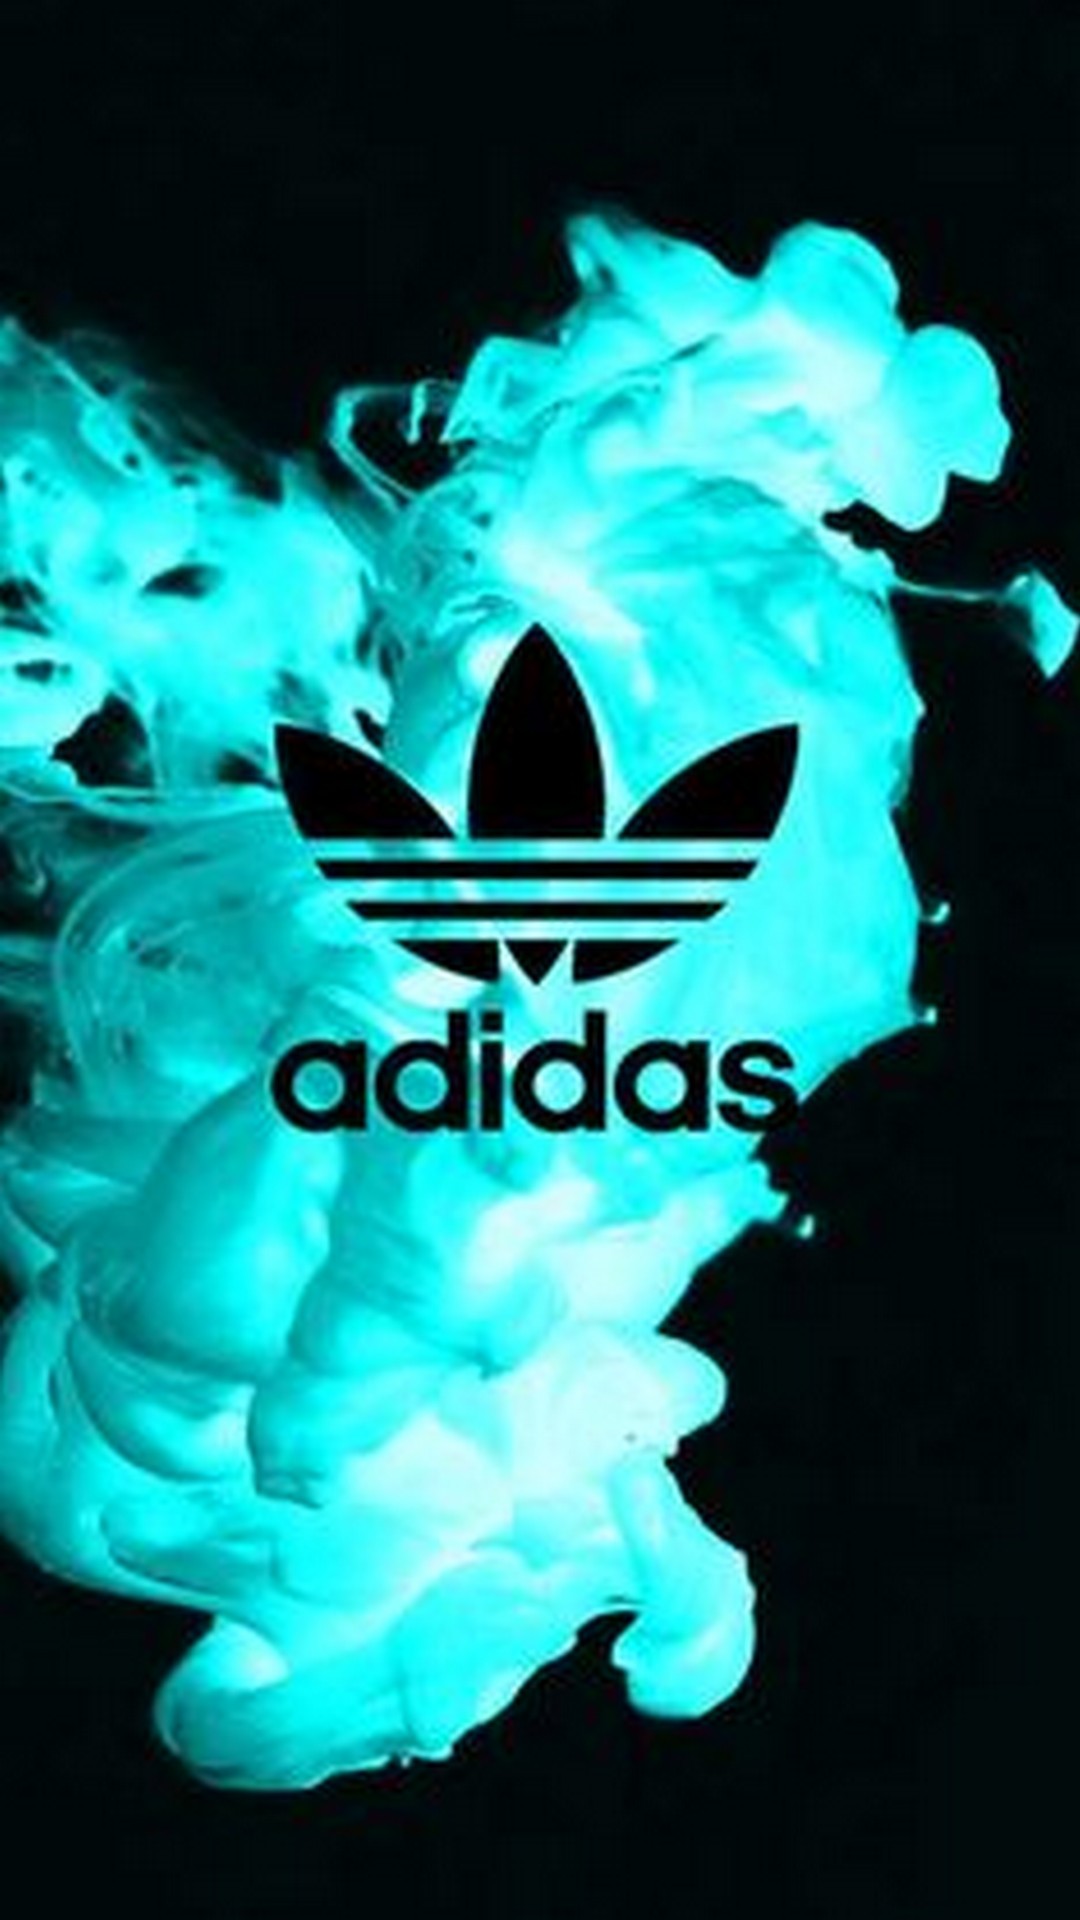 🔥 [25+] Wallpapers Of Adidas | WallpaperSafari